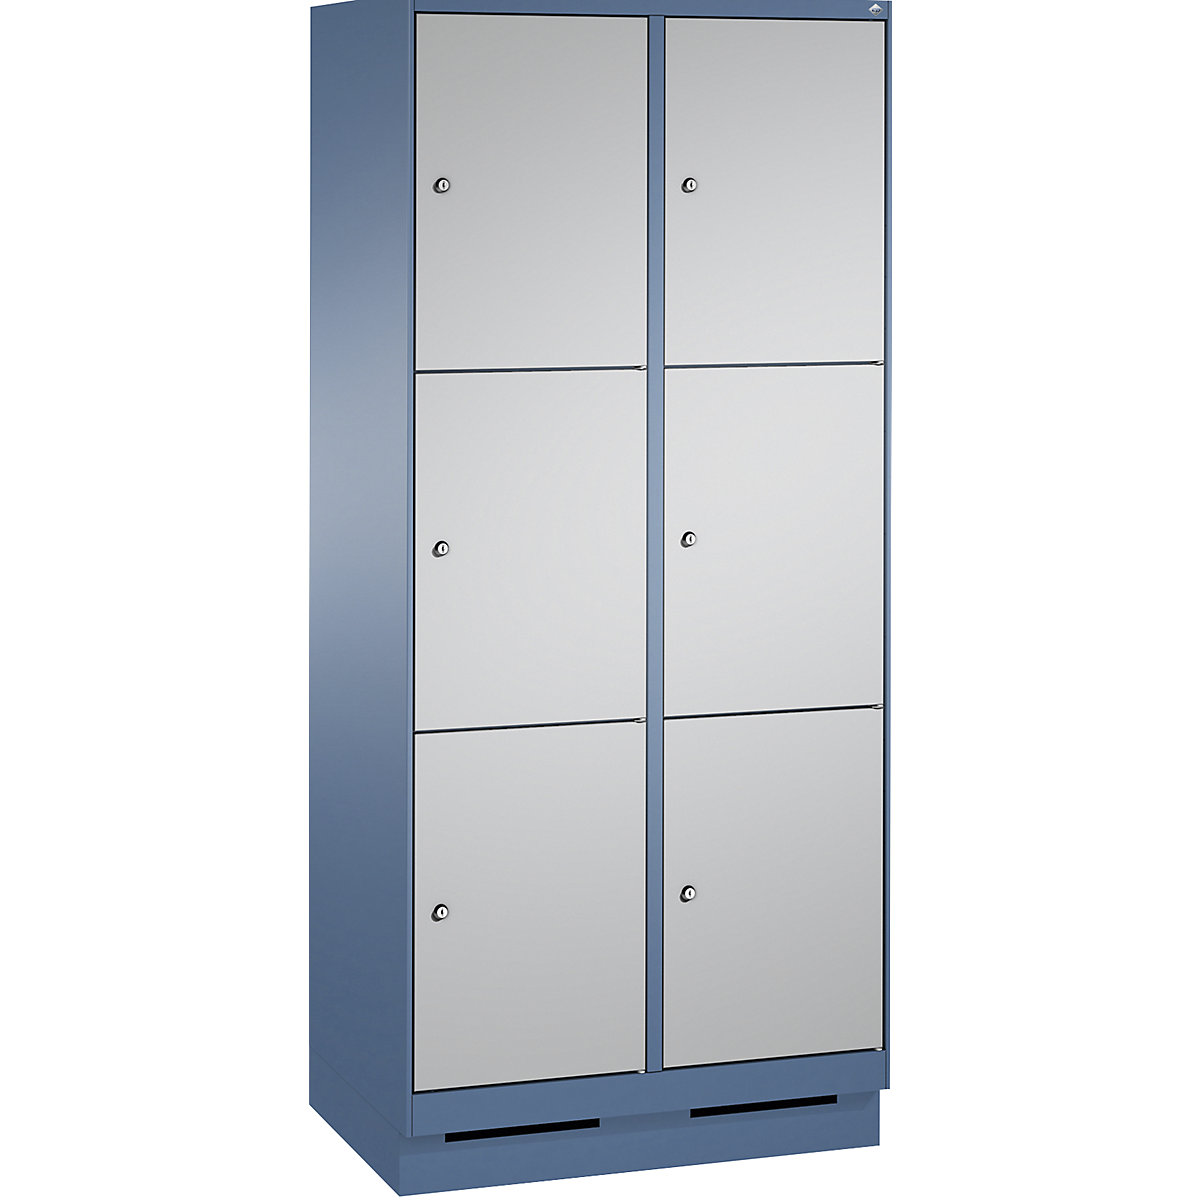 Armoire à casiers sur socle EVOLO – C+P, 2 compartiments, 3 casiers chacun, largeur compartiments 400 mm, bleu distant / aluminium-8